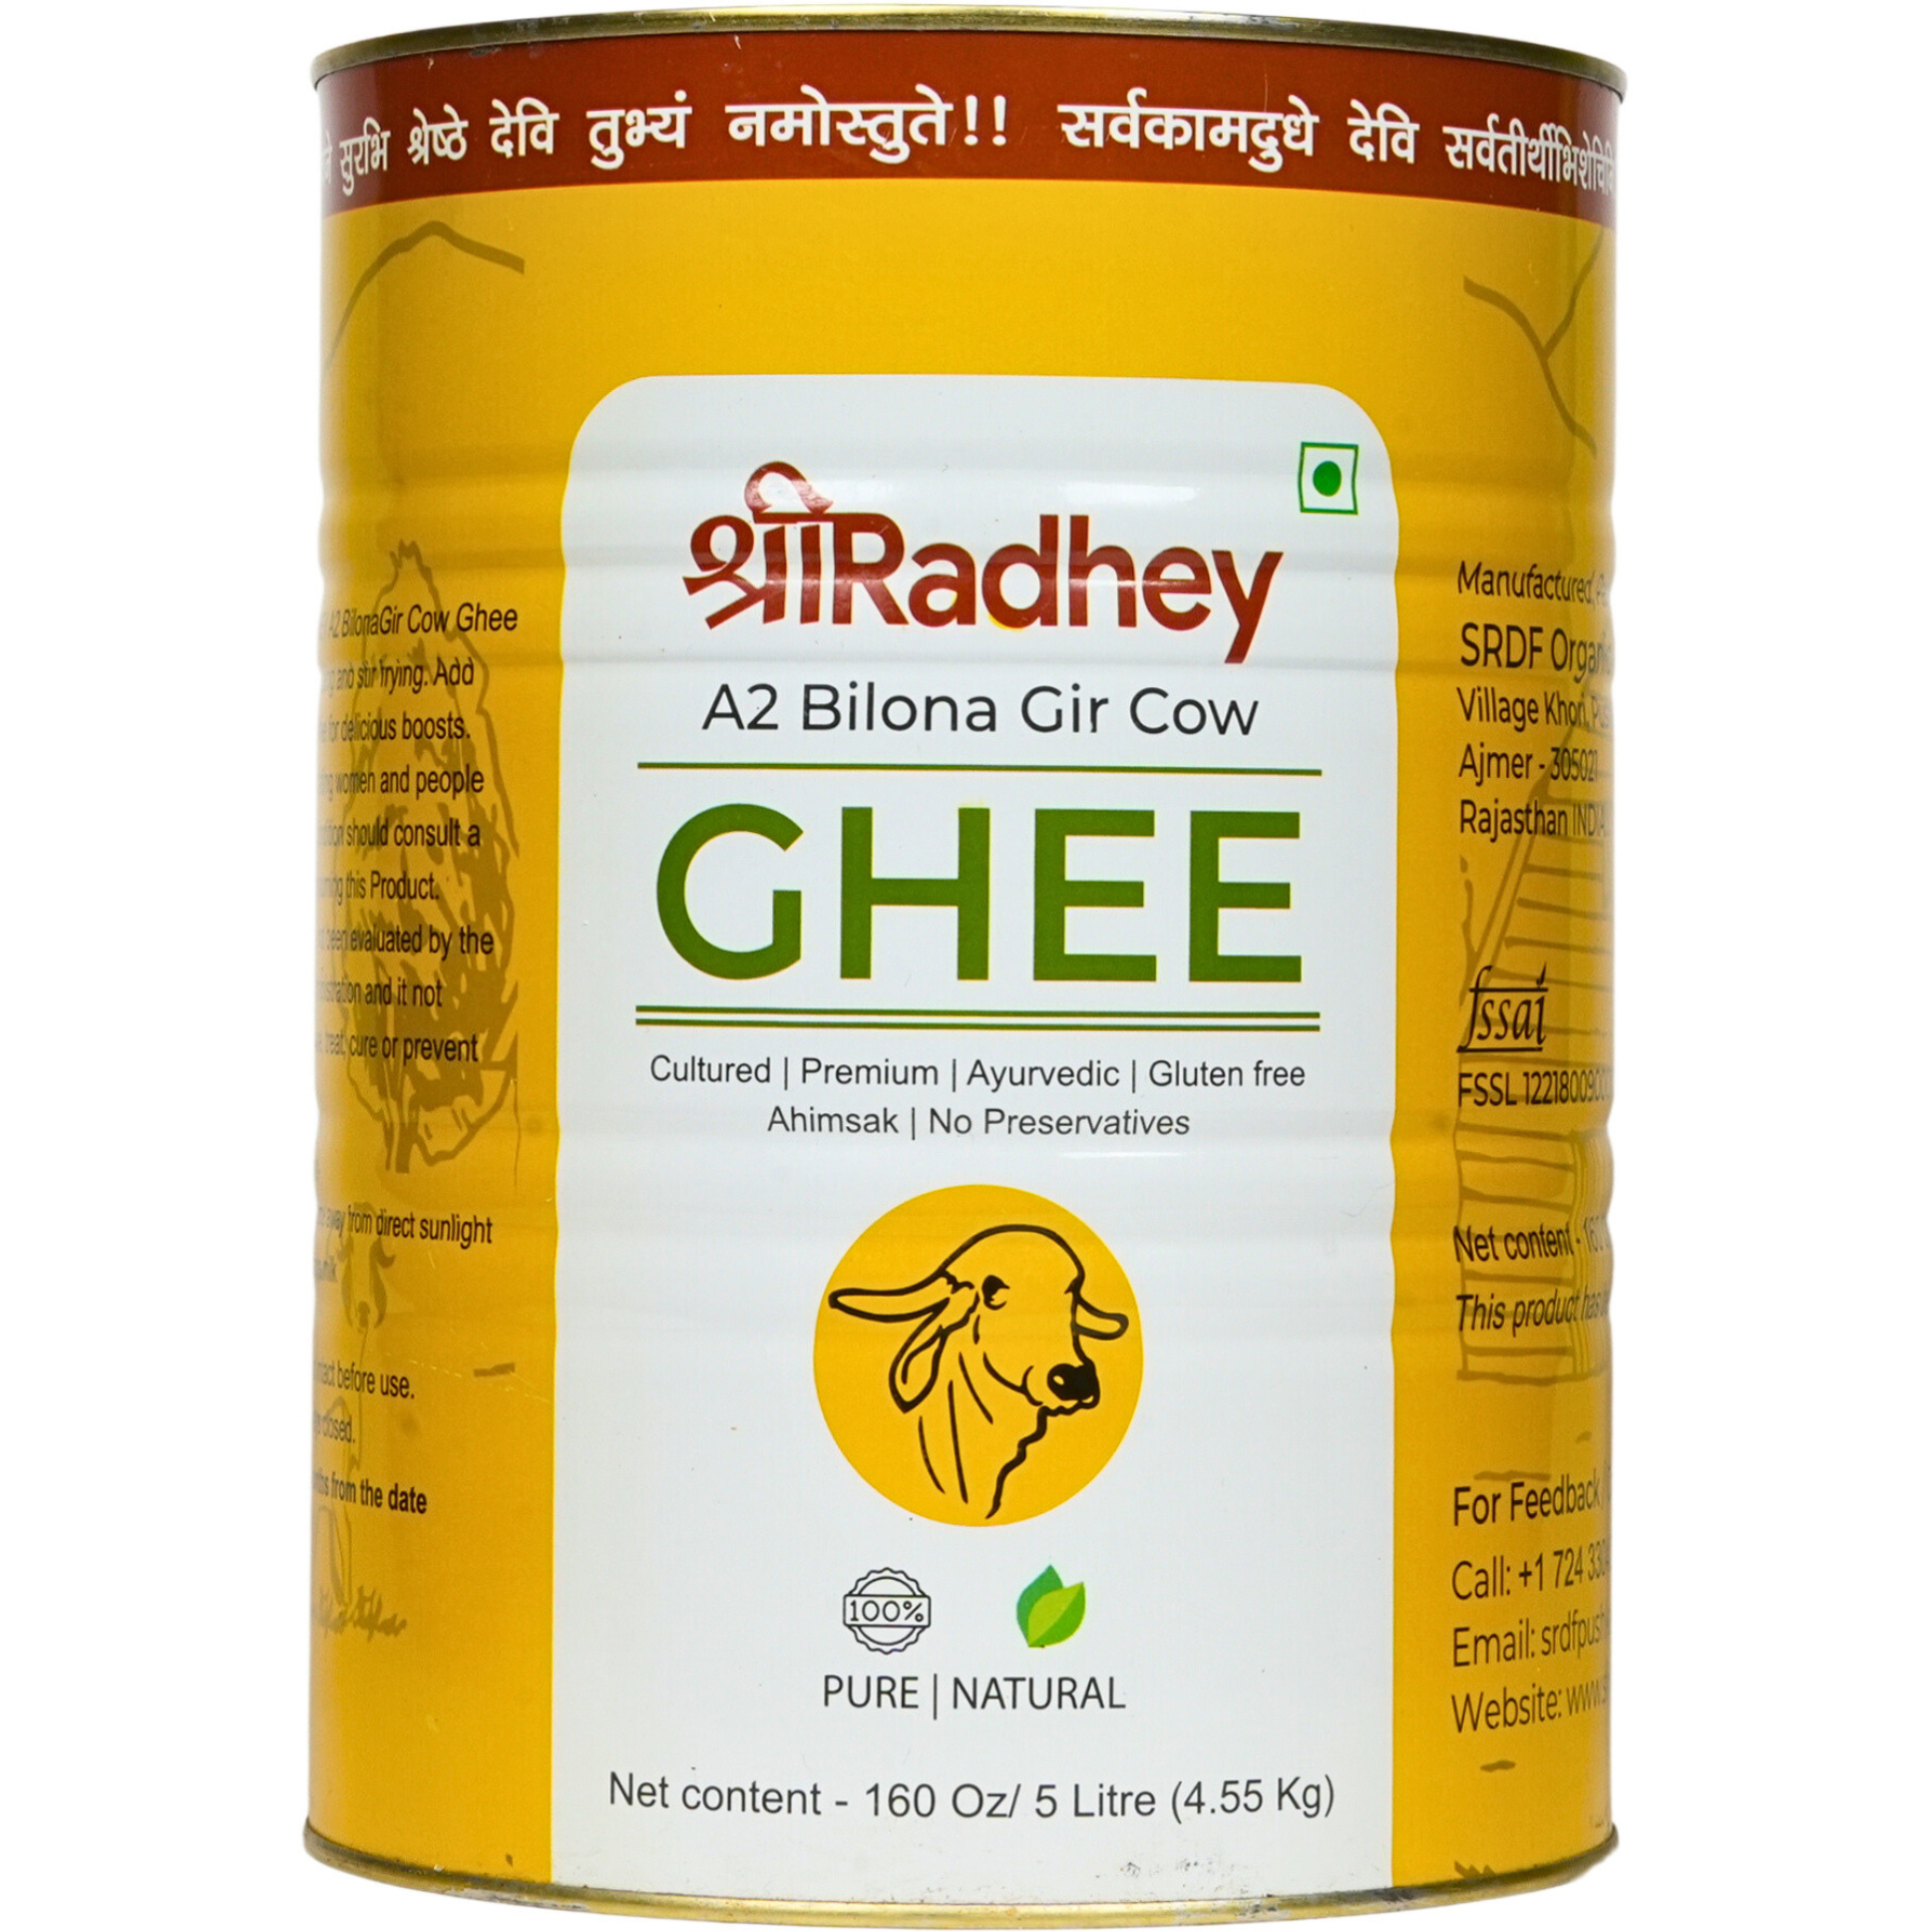 Shree Radhey A2 Gir Cow ghee -5000 ml (5 Litres)